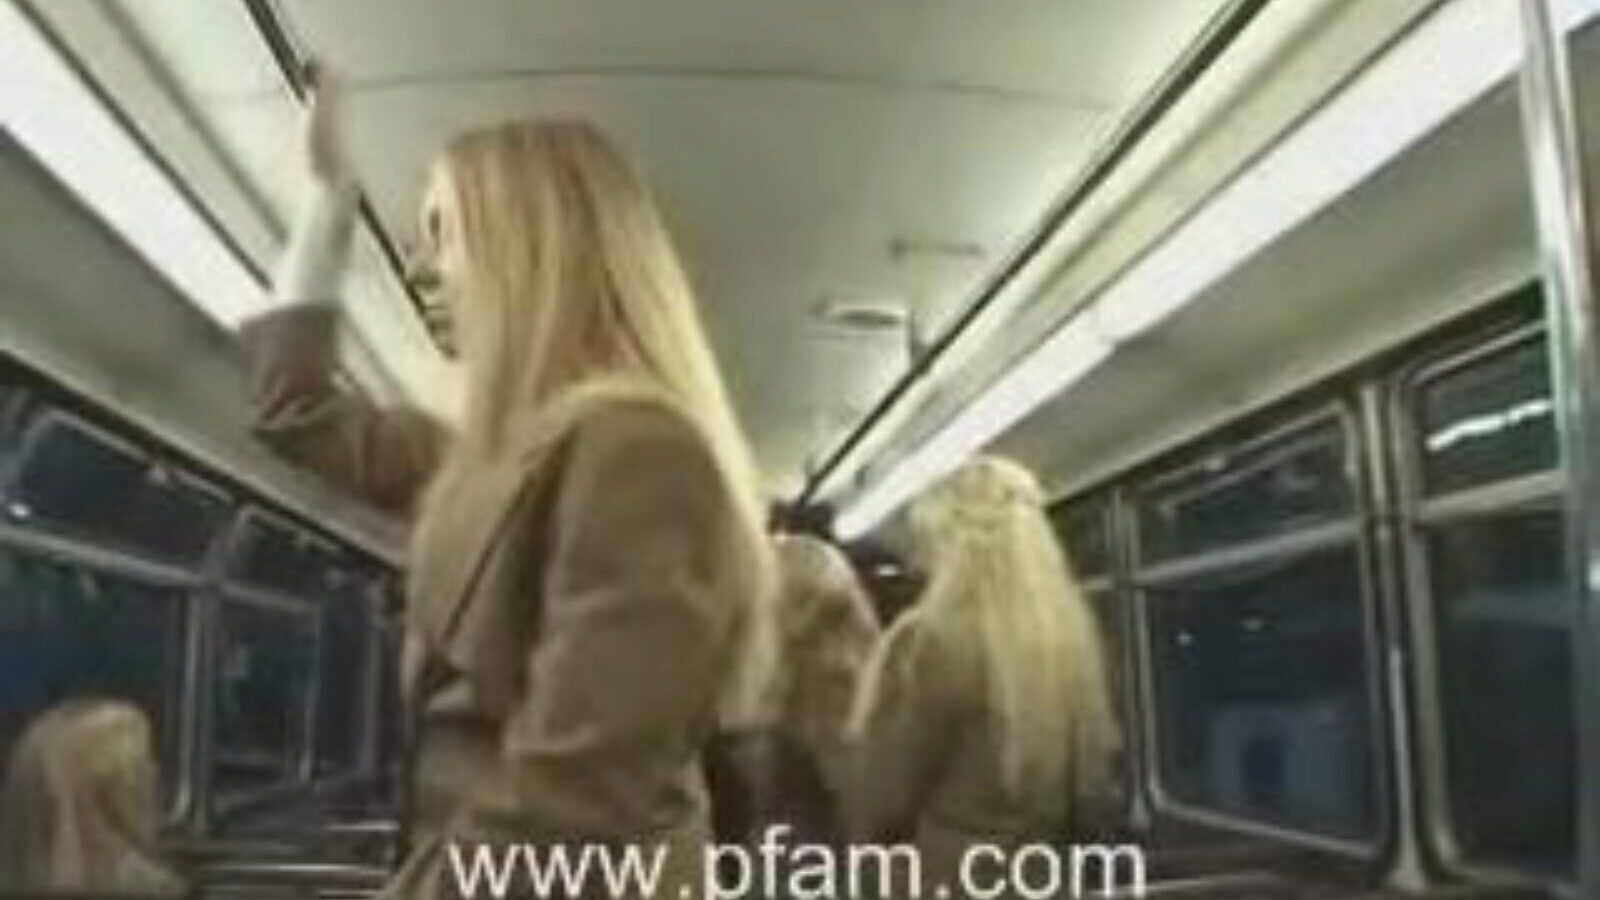 λευκή σχολική κοπέλα και ασιατικός άντρας, ο ξανθός κολεγιακός άγγελος μαγειρεύει χασμουρητό για το ιαπωνικό μάγισσα στο λεωφορείο.